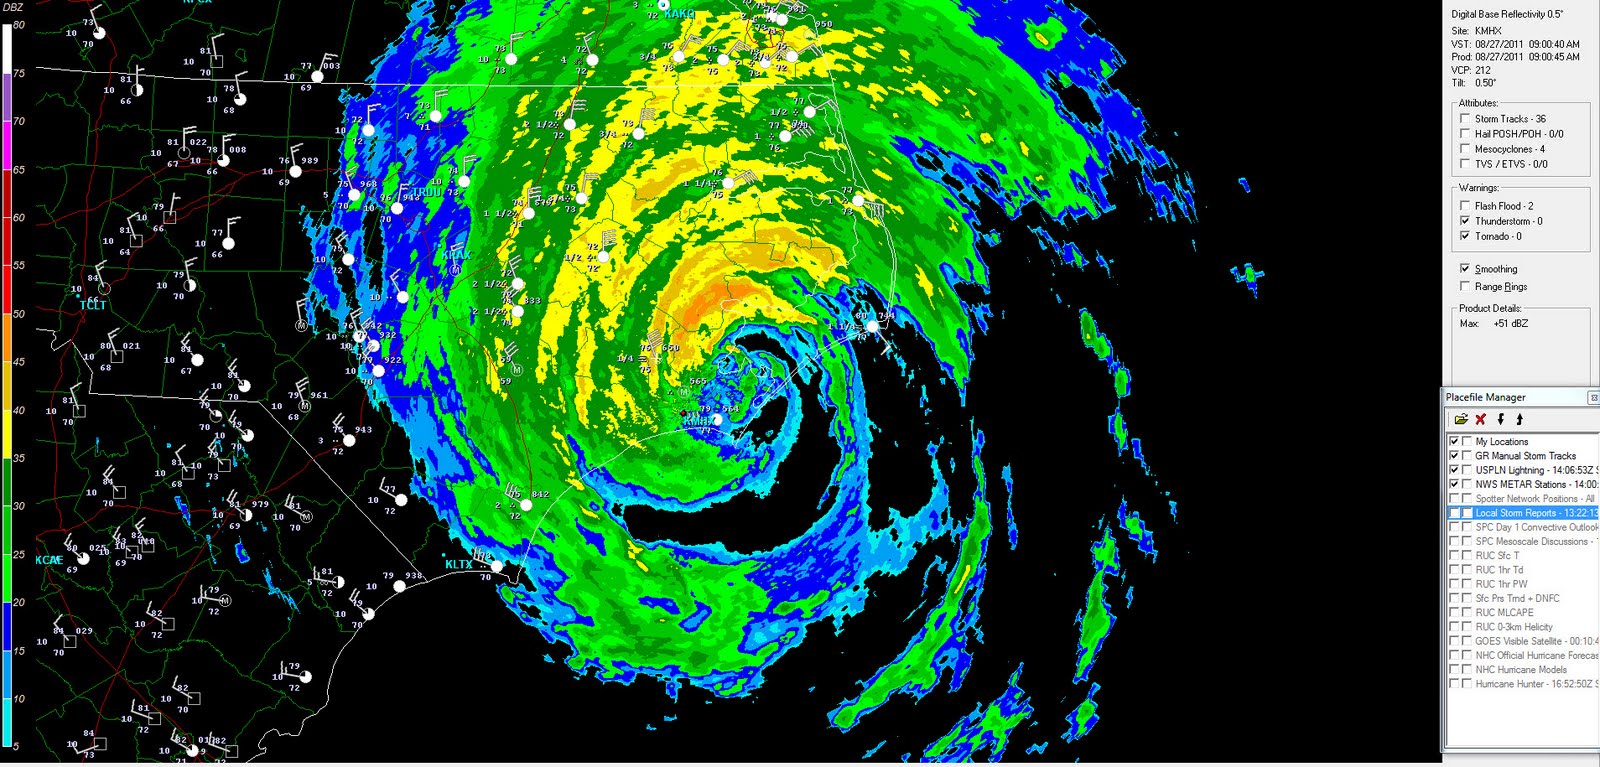 The Original Weather Blog: Hurricane Irene Update - 5:35 